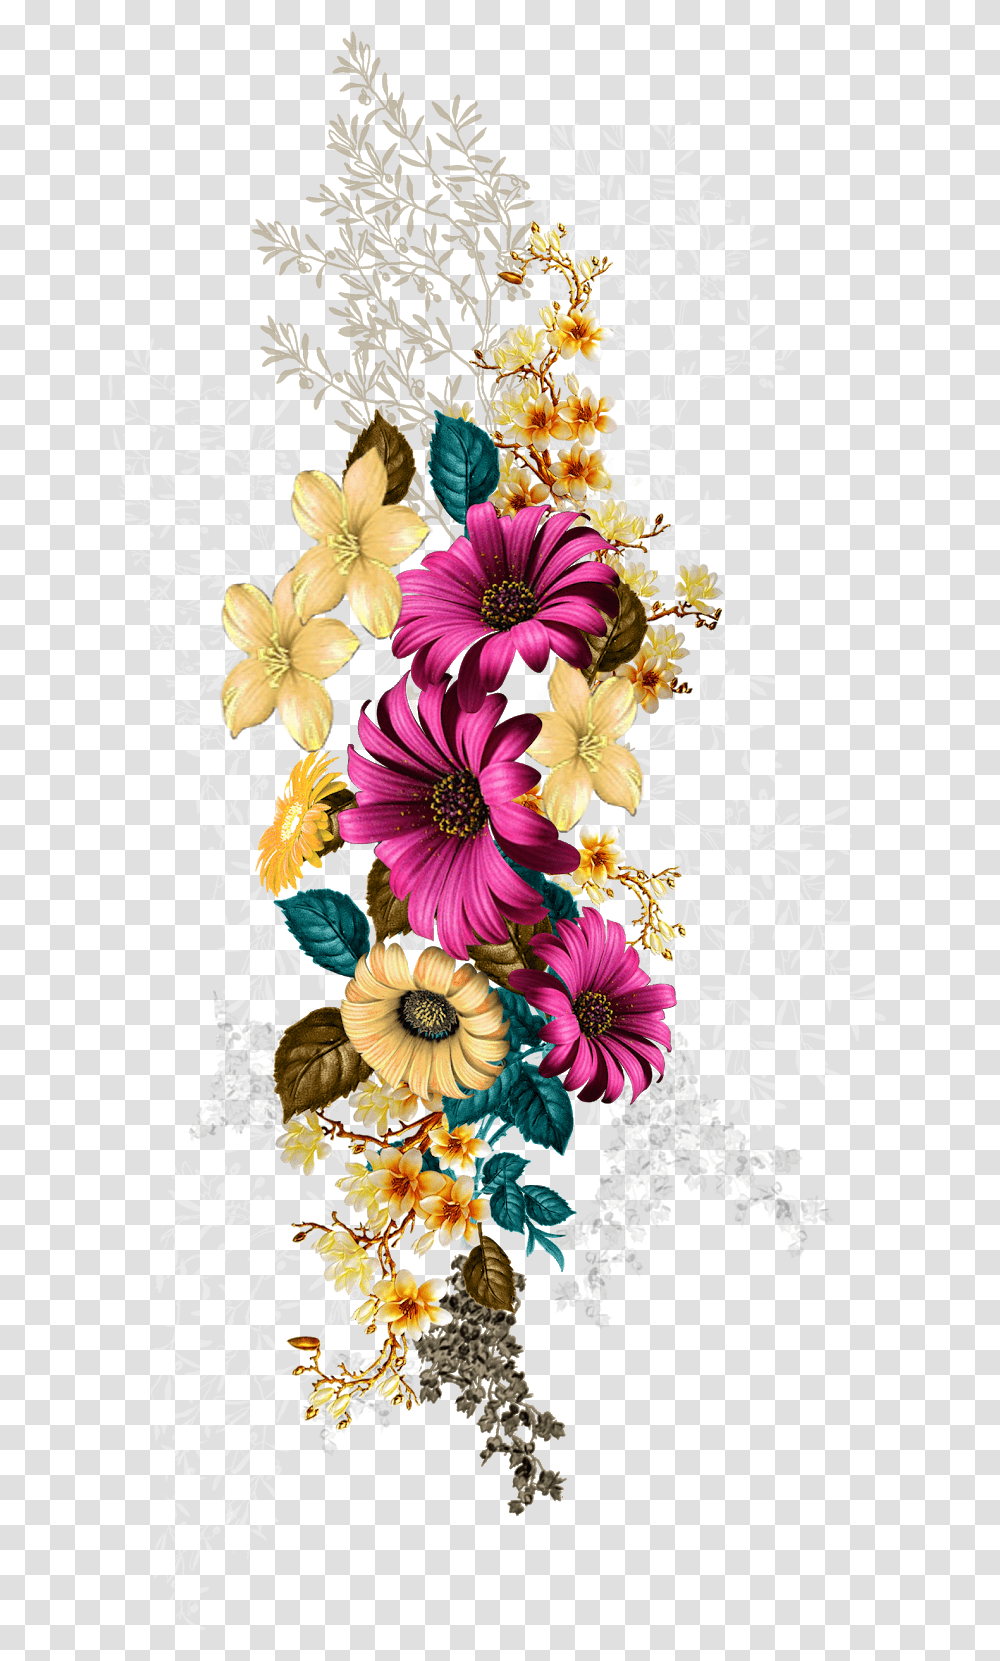 Flower Design Digital Ladies Dress Pattern Textile Flower Digital Print Design, Graphics, Art, Floral Design, Pineapple Transparent Png